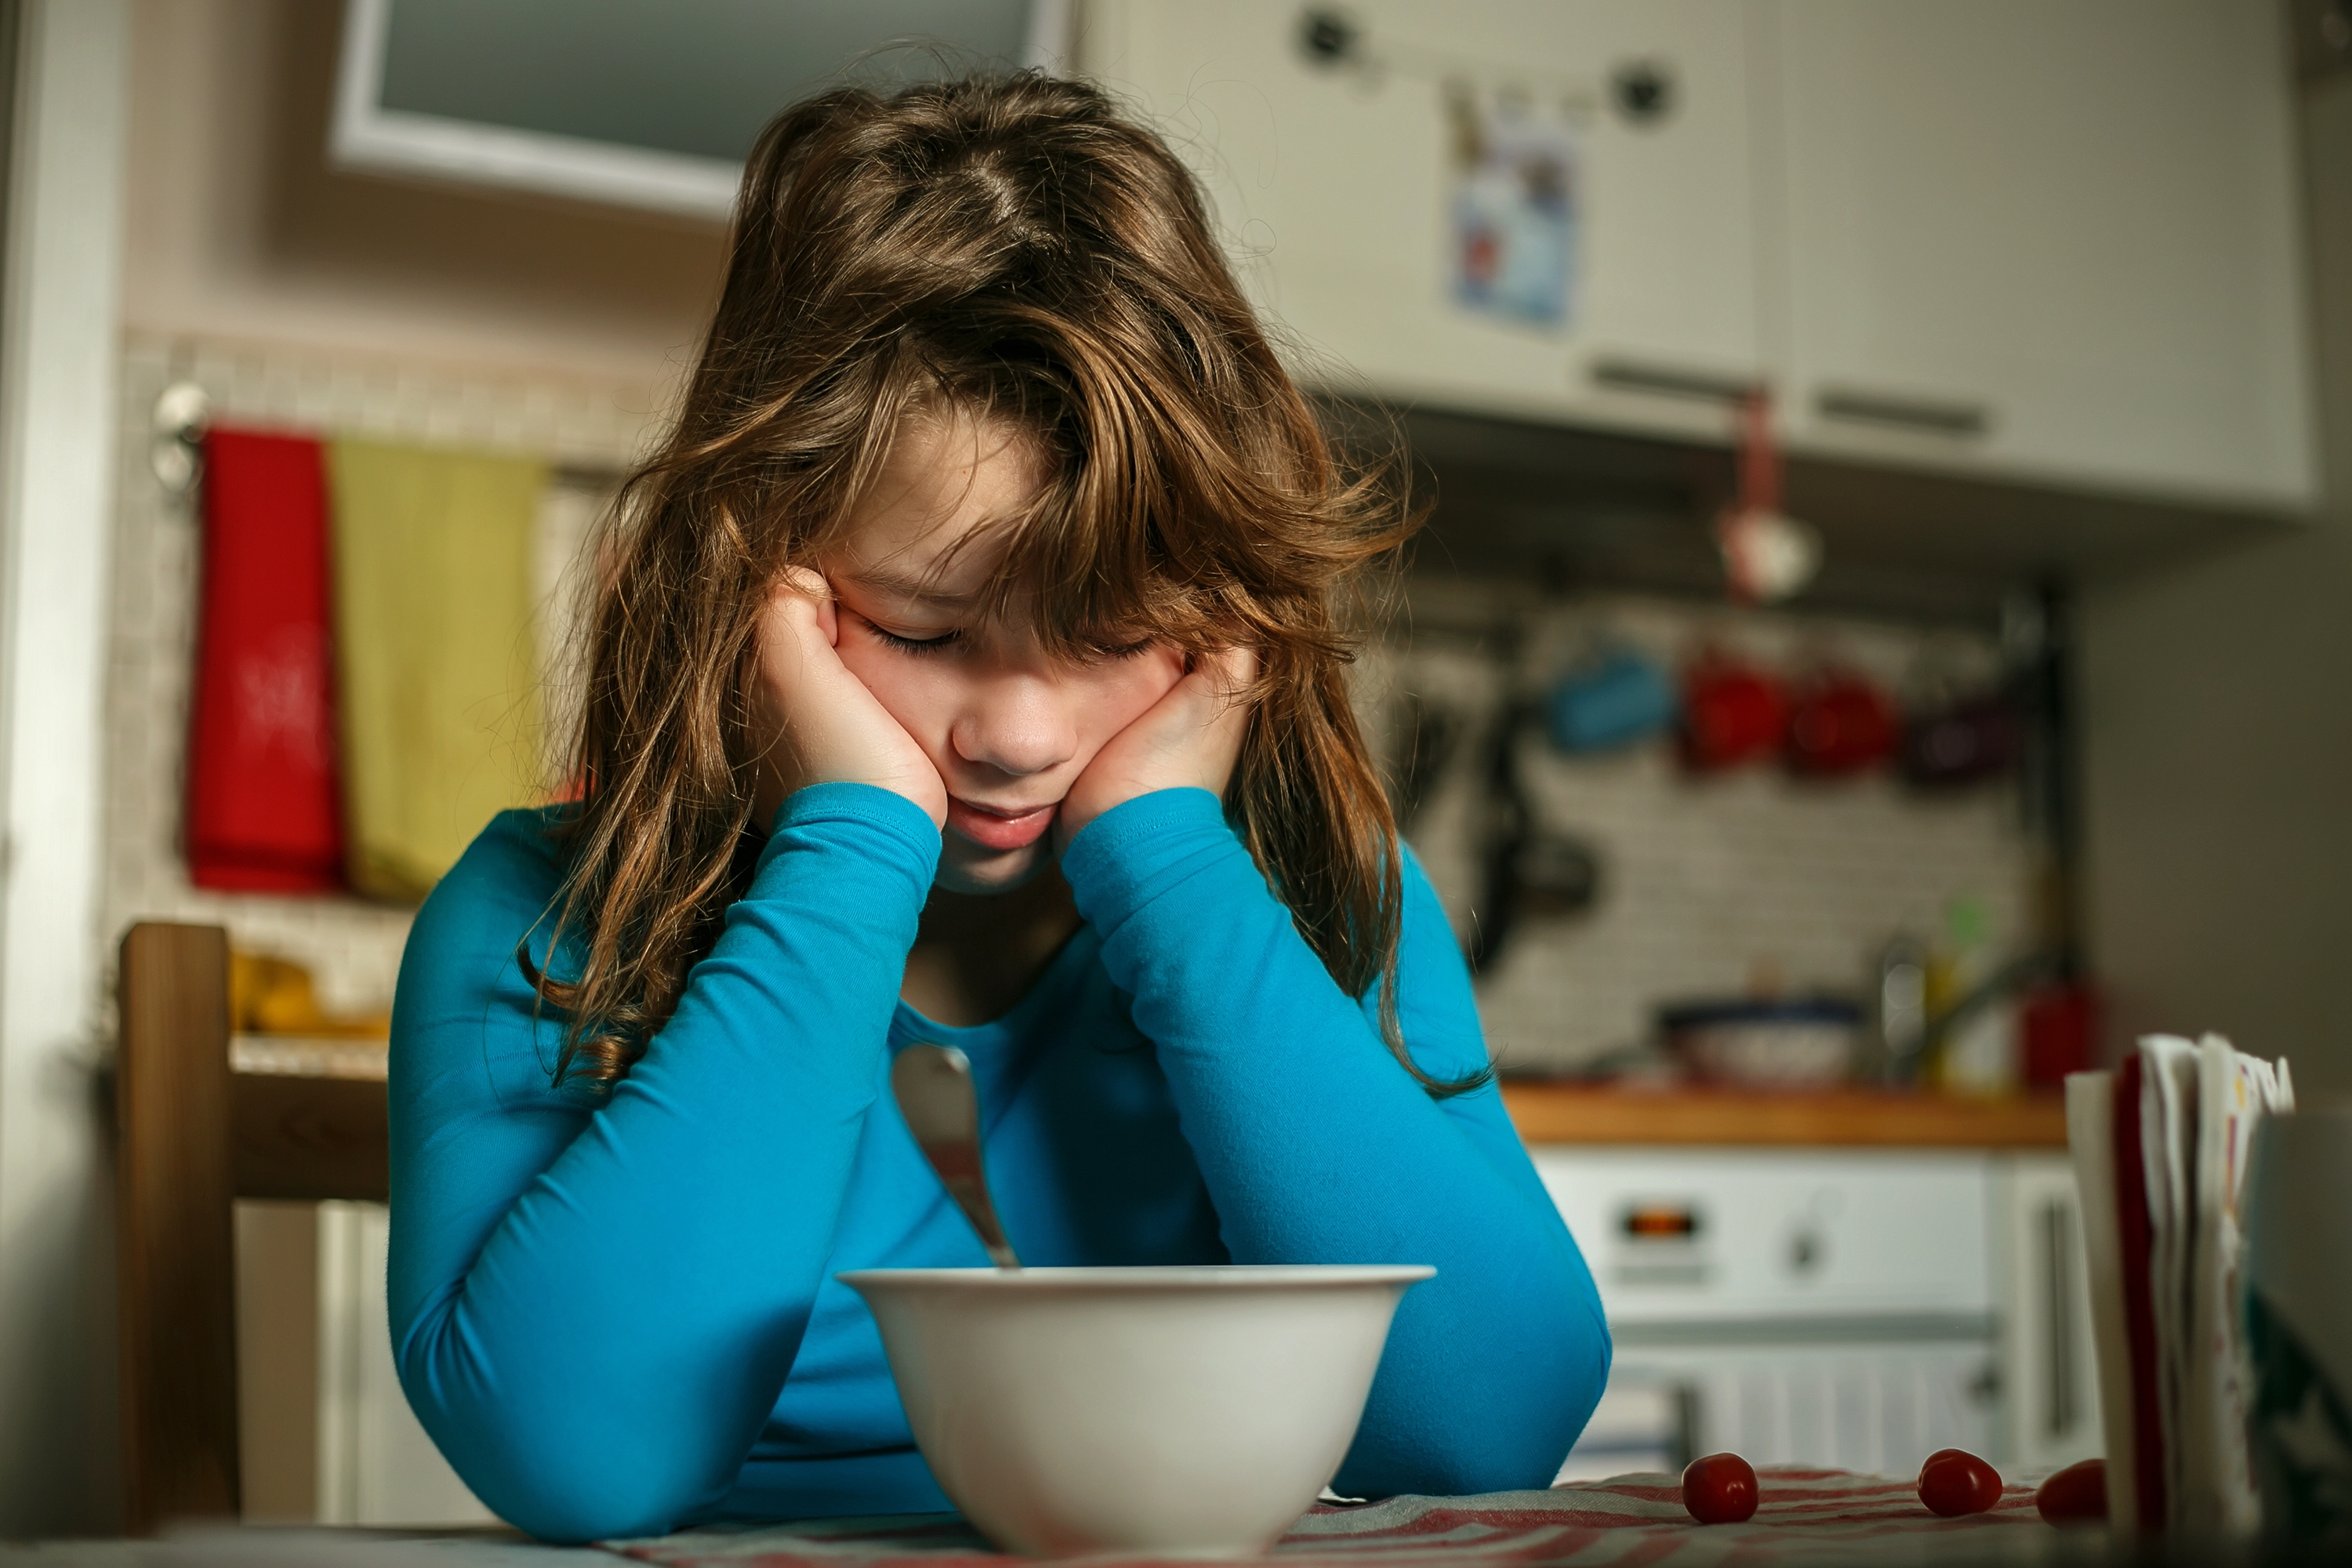 La chica inclinada sobre su plato de desayuno en pose contrariada | Fuente: Shutterstock.com